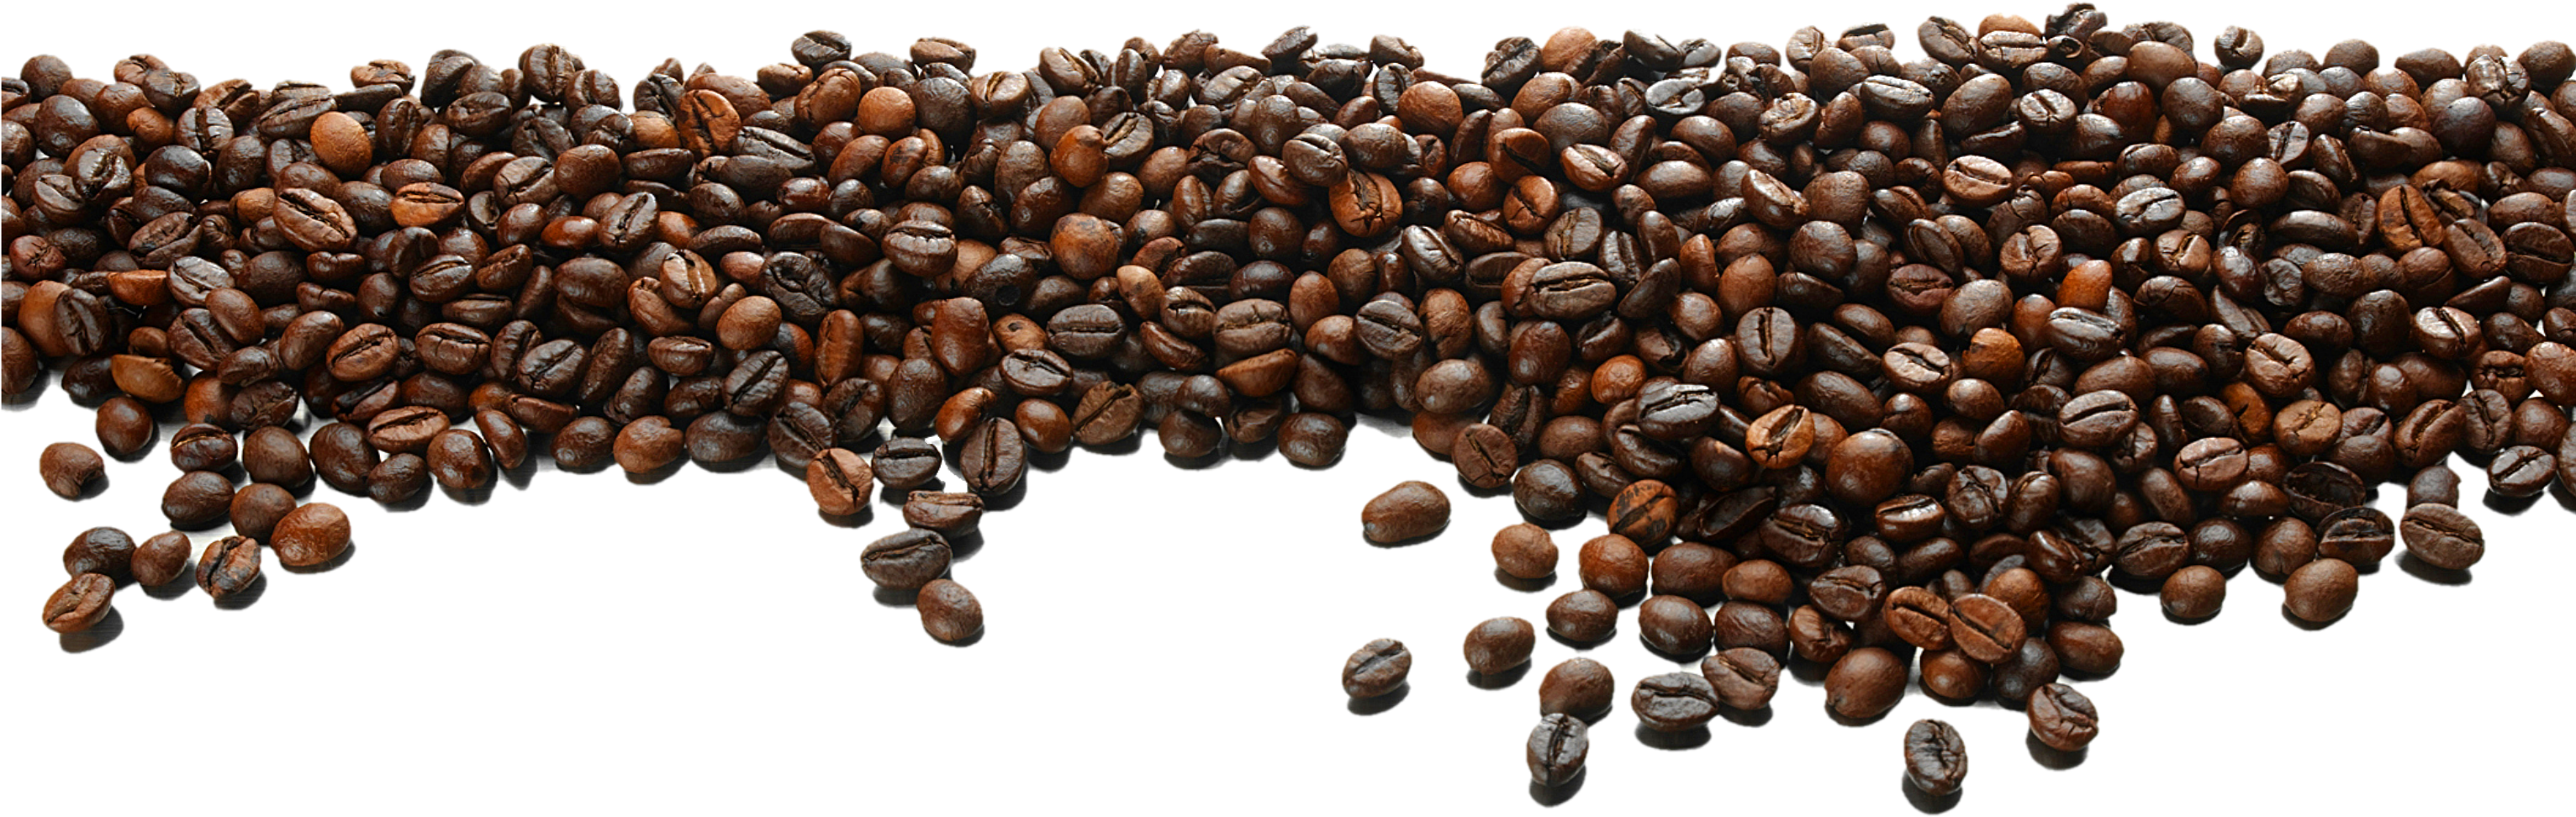 Grãos de café